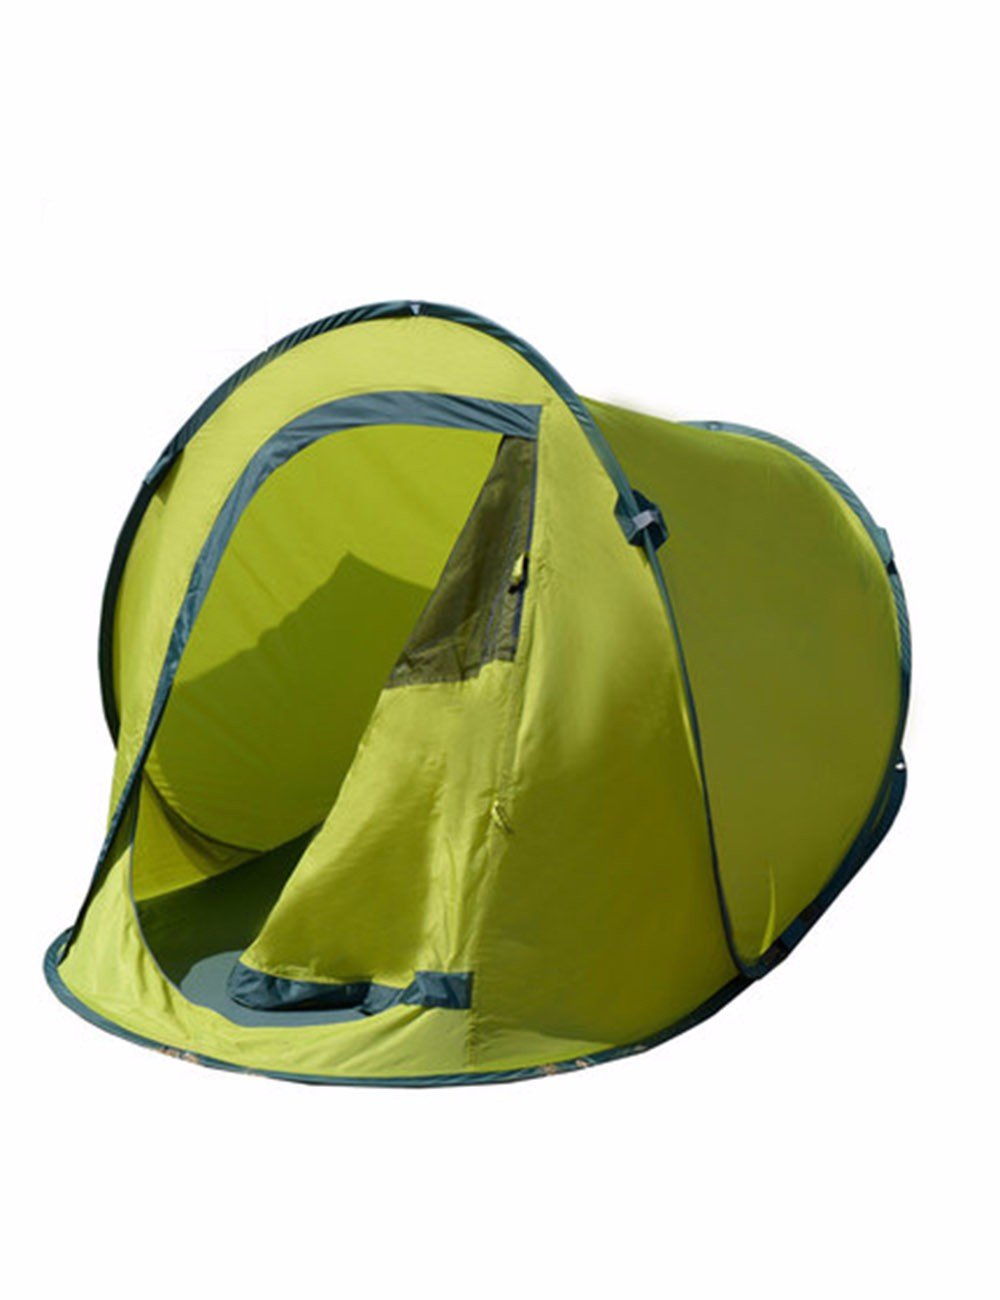 送料無料SJQKA-Camping Tent Camping Leisure Travel KitDouble Rain Speed The Hands Free To Build Gaming HousingAttentio